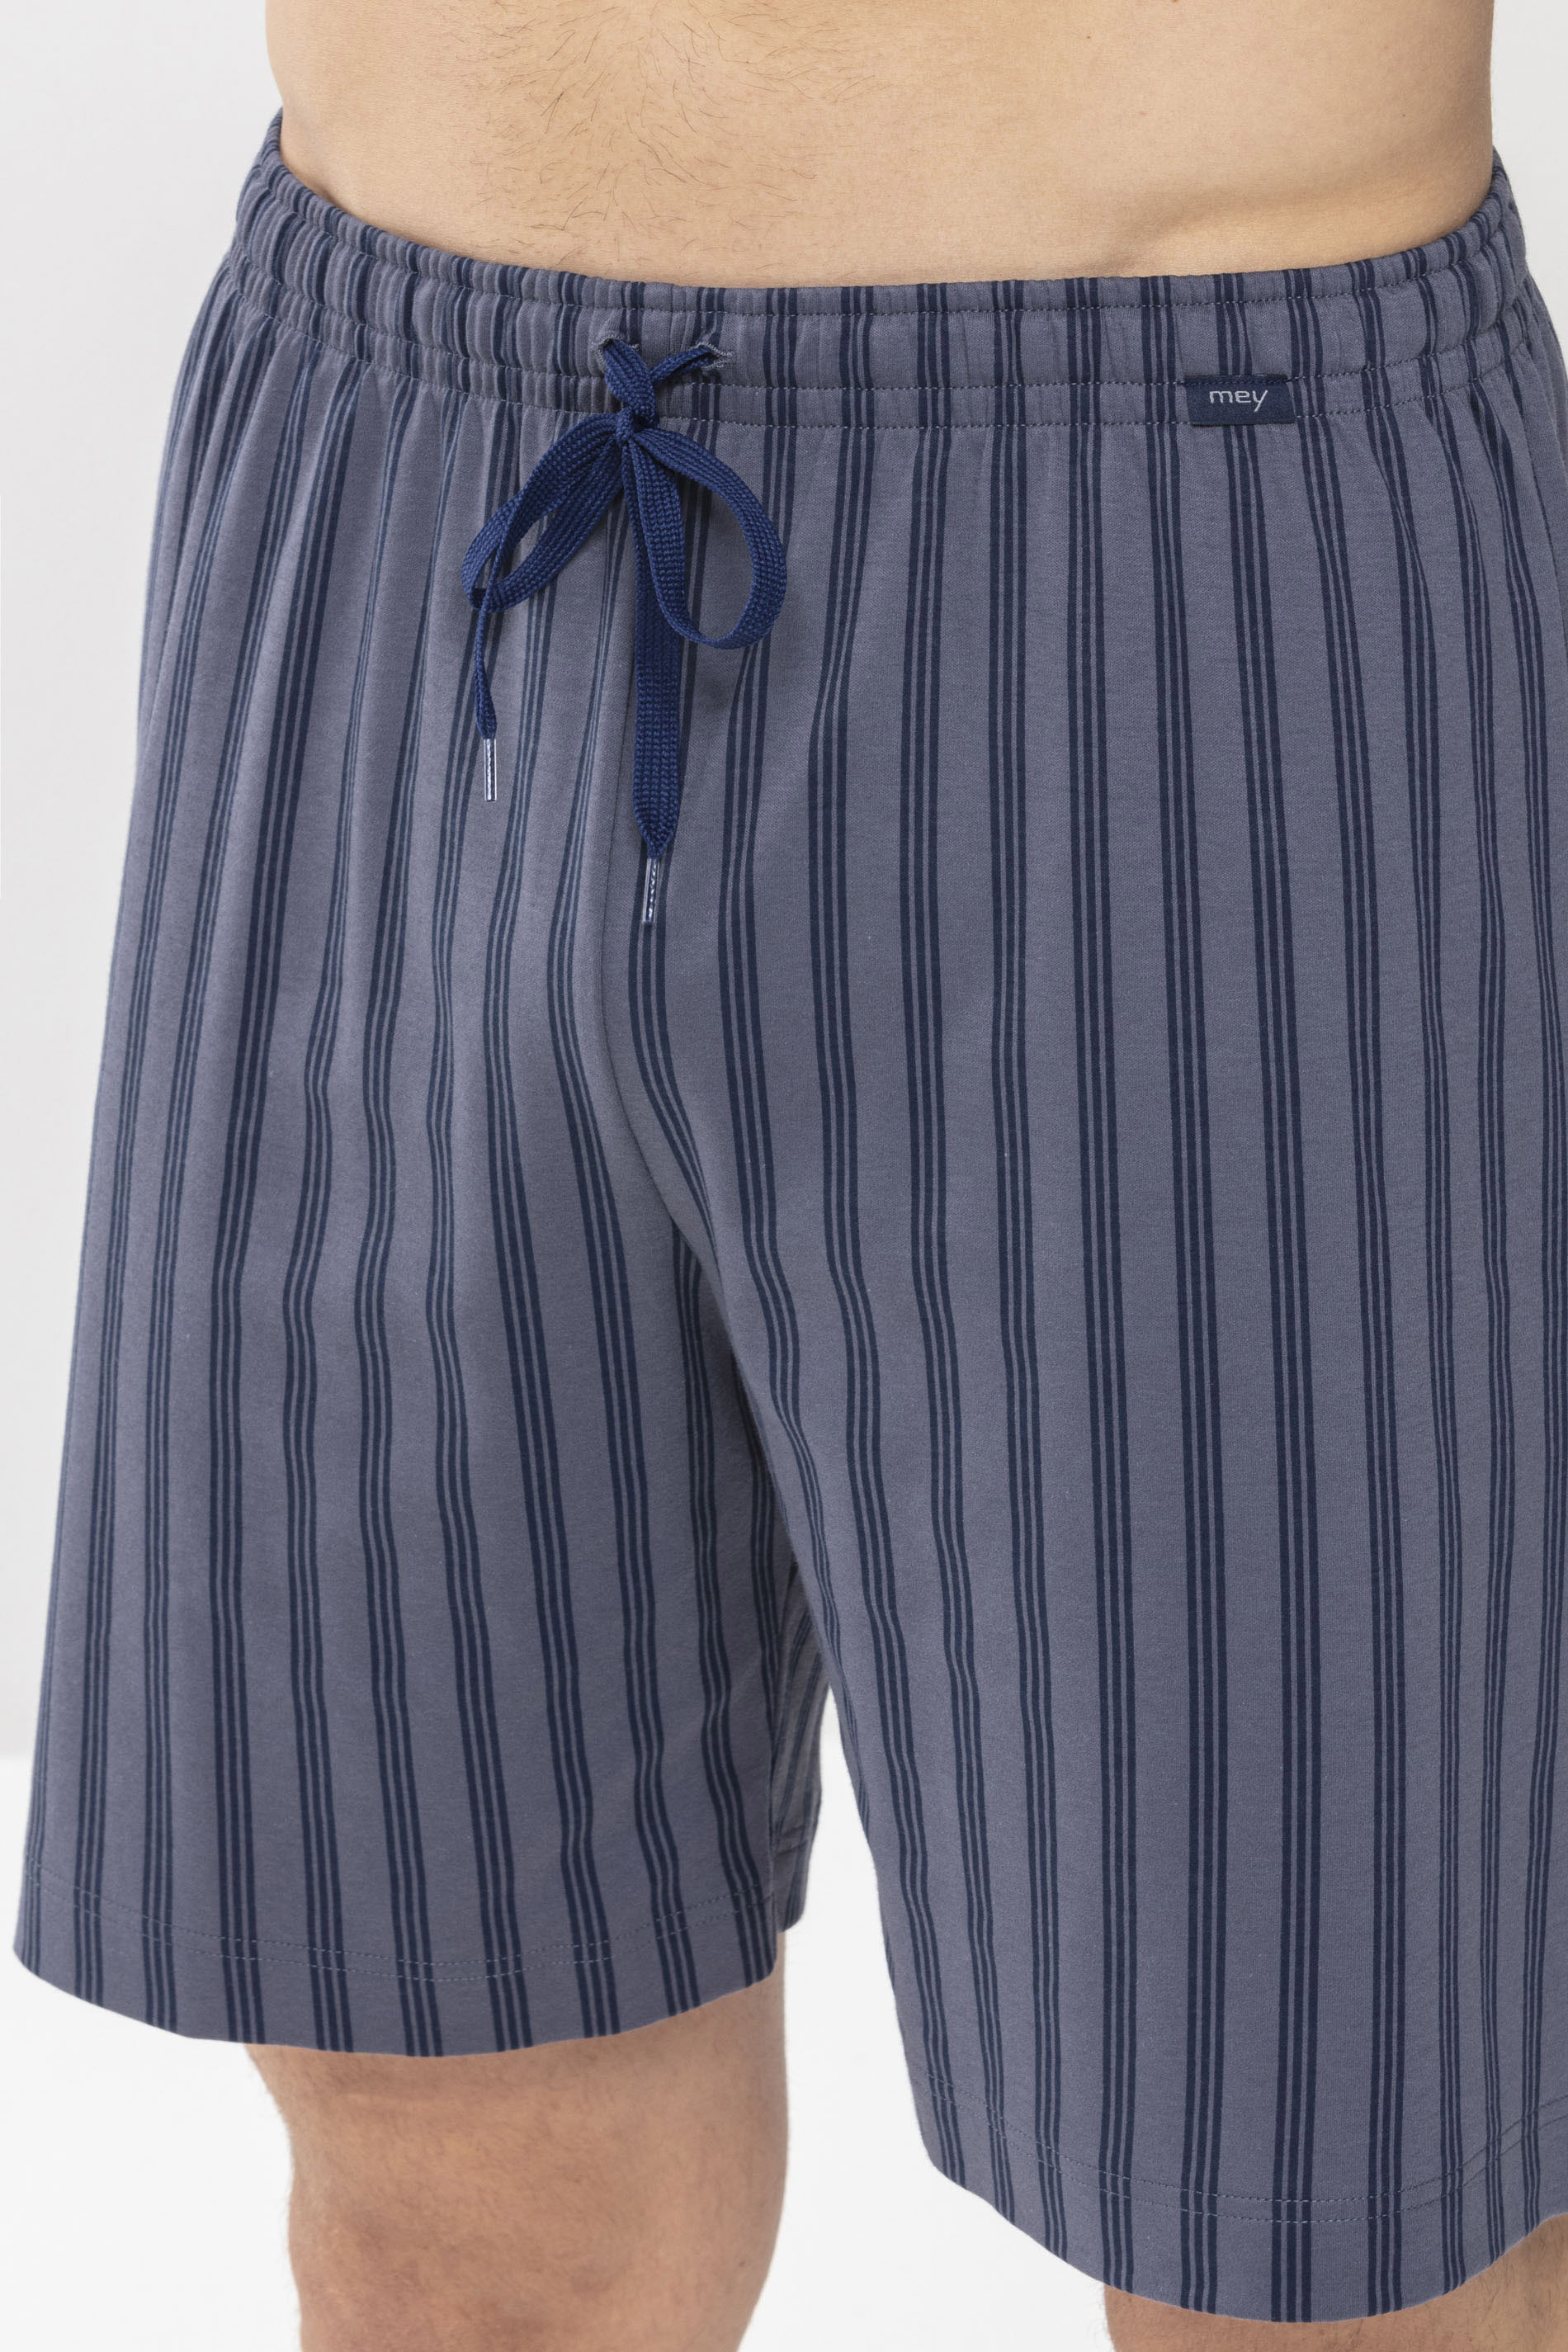 Short pants Soft Grey Serie Cranbourne Detail View 01 | mey®